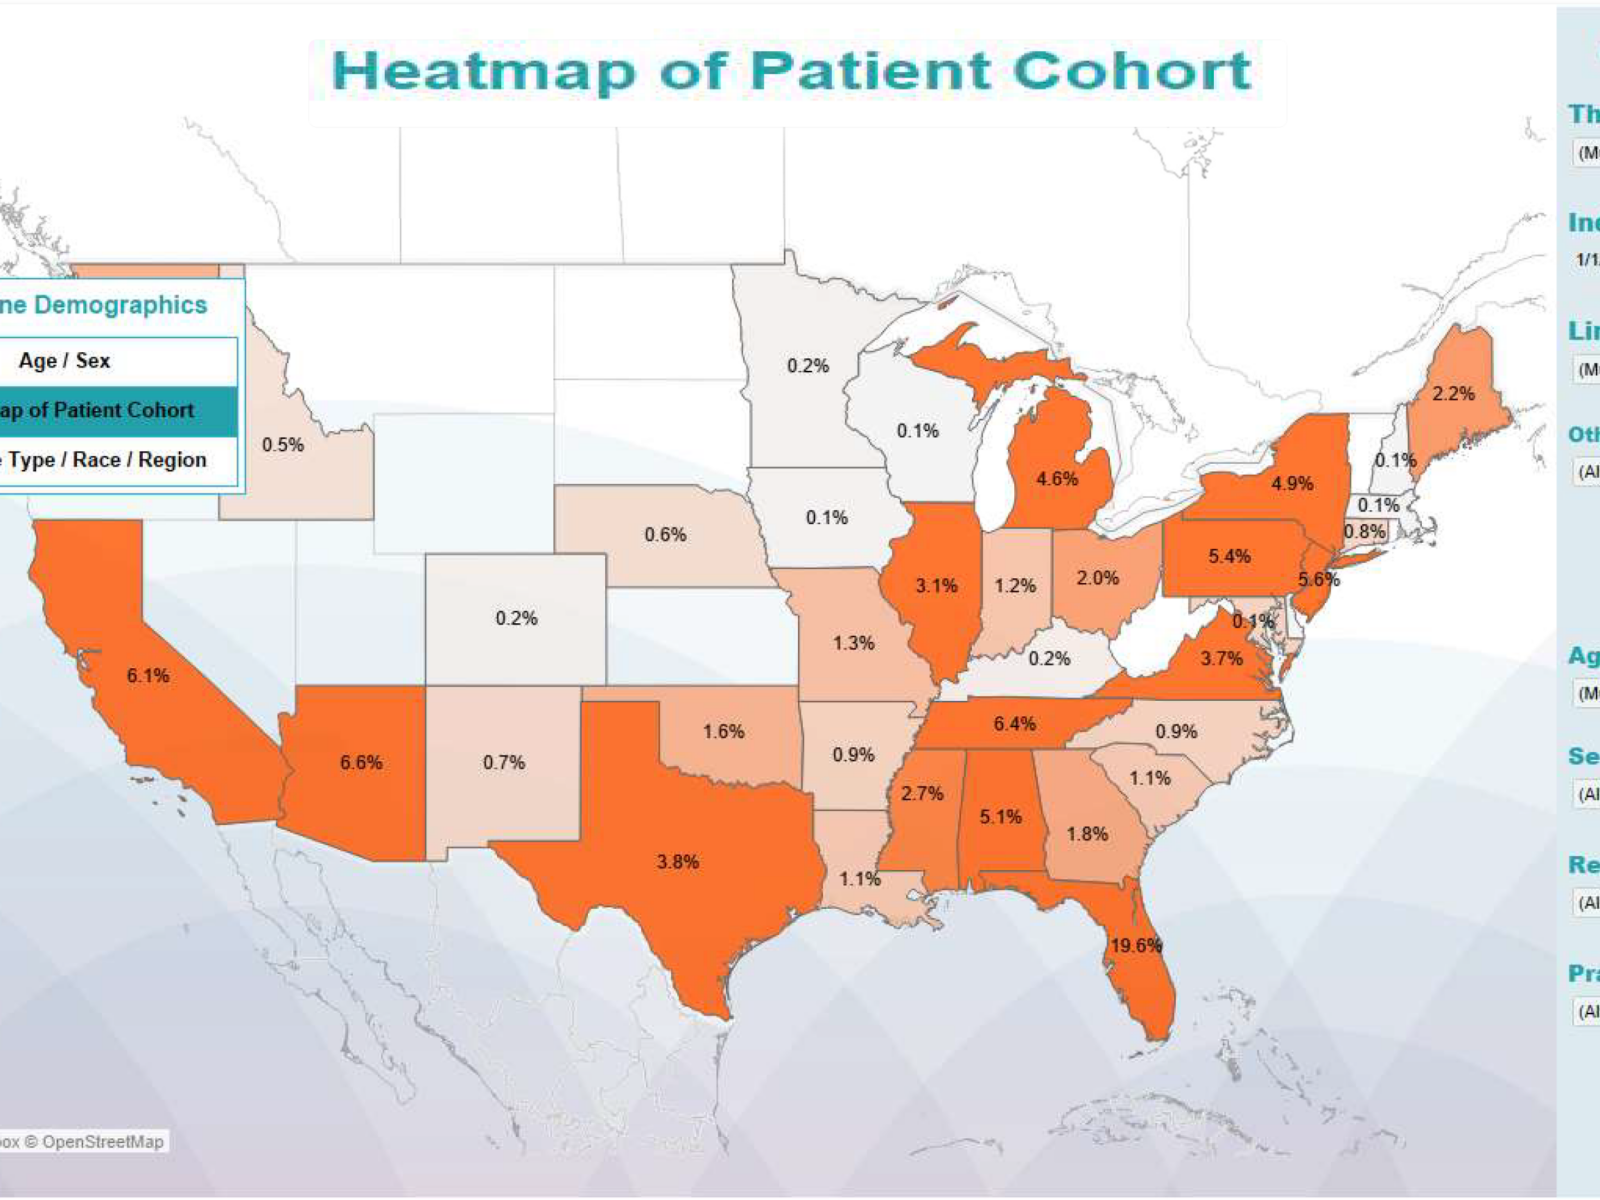 RWE dashboard - heatmap of patient cohort